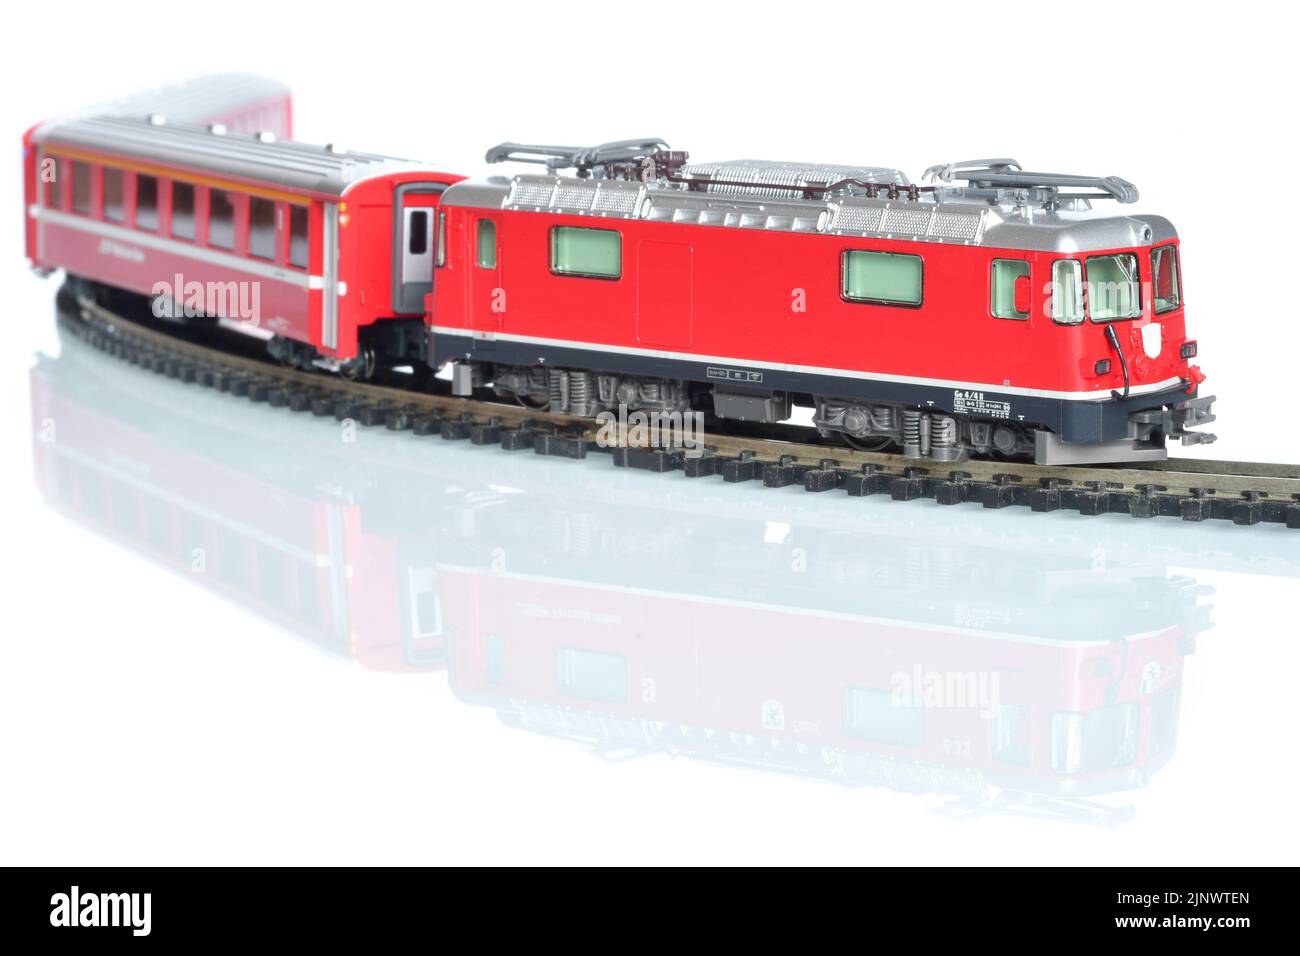 Modello giocattolo in scala di treno rosso isolato su sfondo bianco riflettente Foto Stock